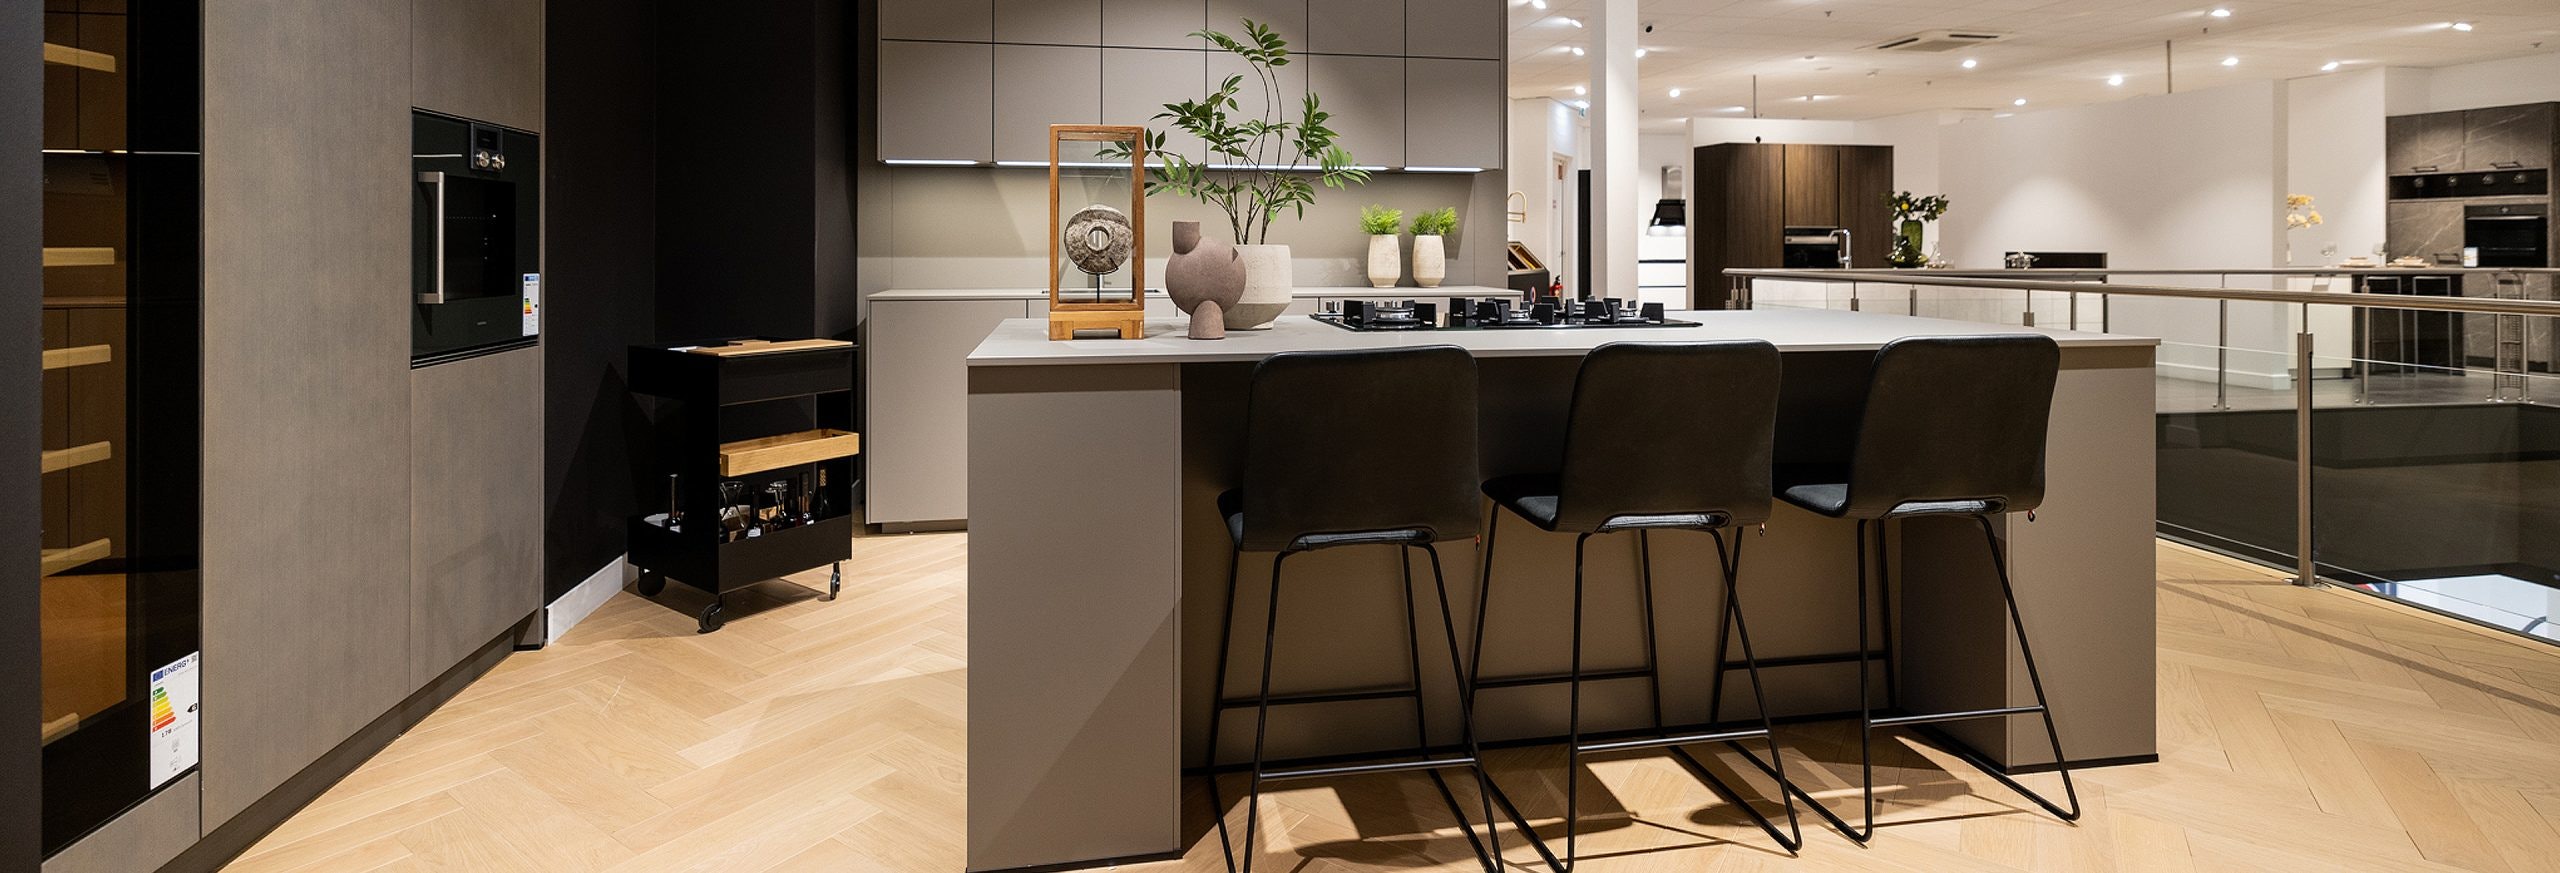 Minimalistische rechte keukenopstelling met kookeiland en hoge kastenwand in natuurlijke kleuren.